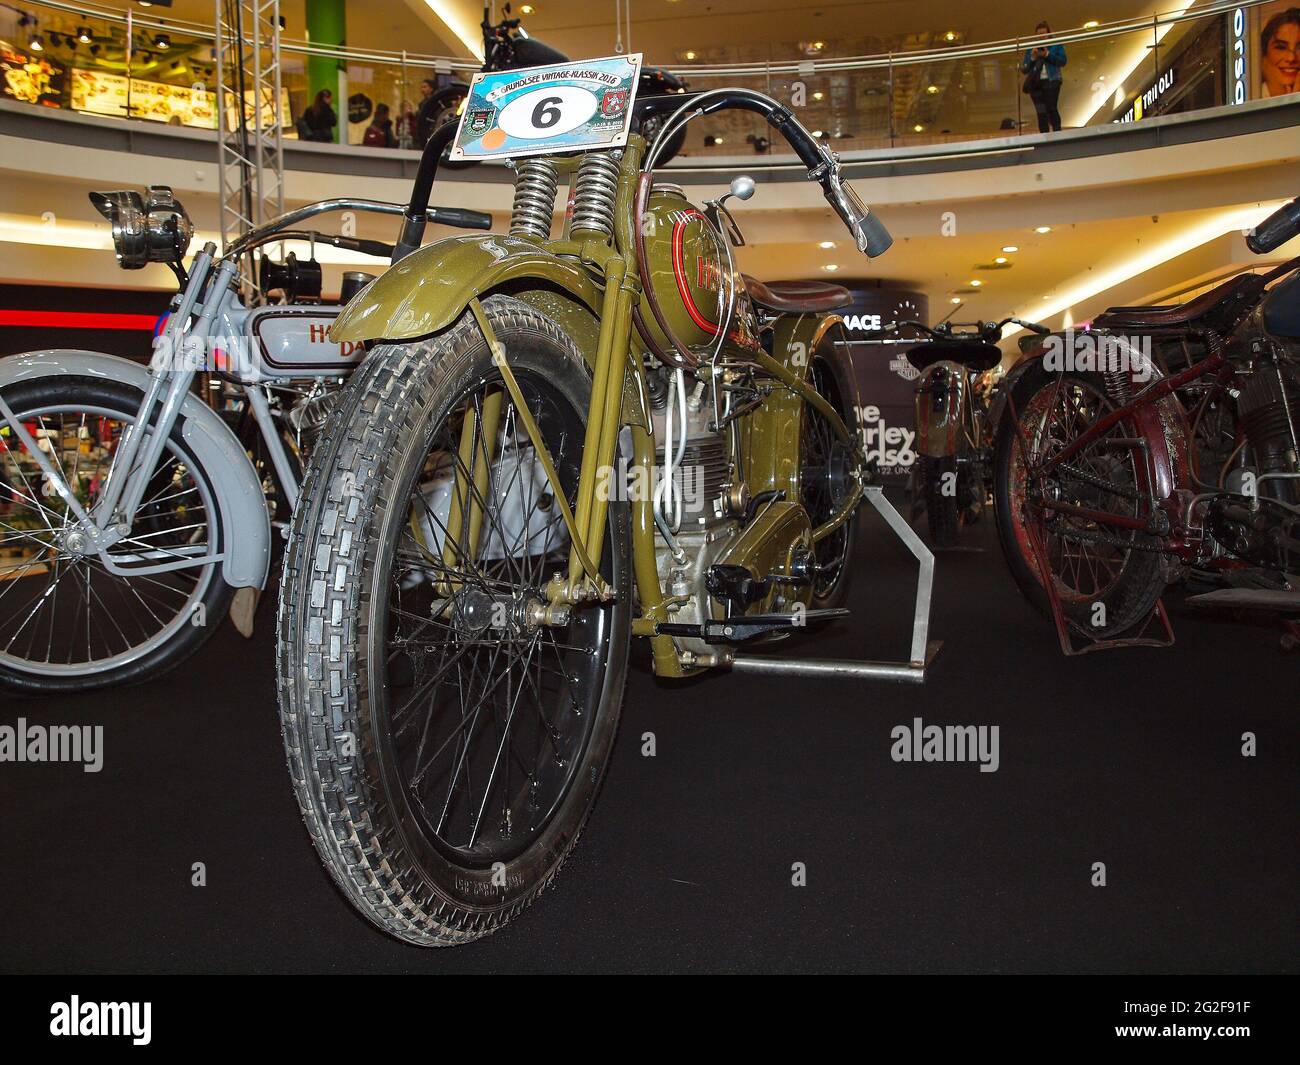 BRNO, RÉPUBLIQUE TCHÈQUE - 20 février 2020 : exposition des motos Harley davidson actuelles et historiques dans la galerie Vankovka à Brno. Banque D'Images